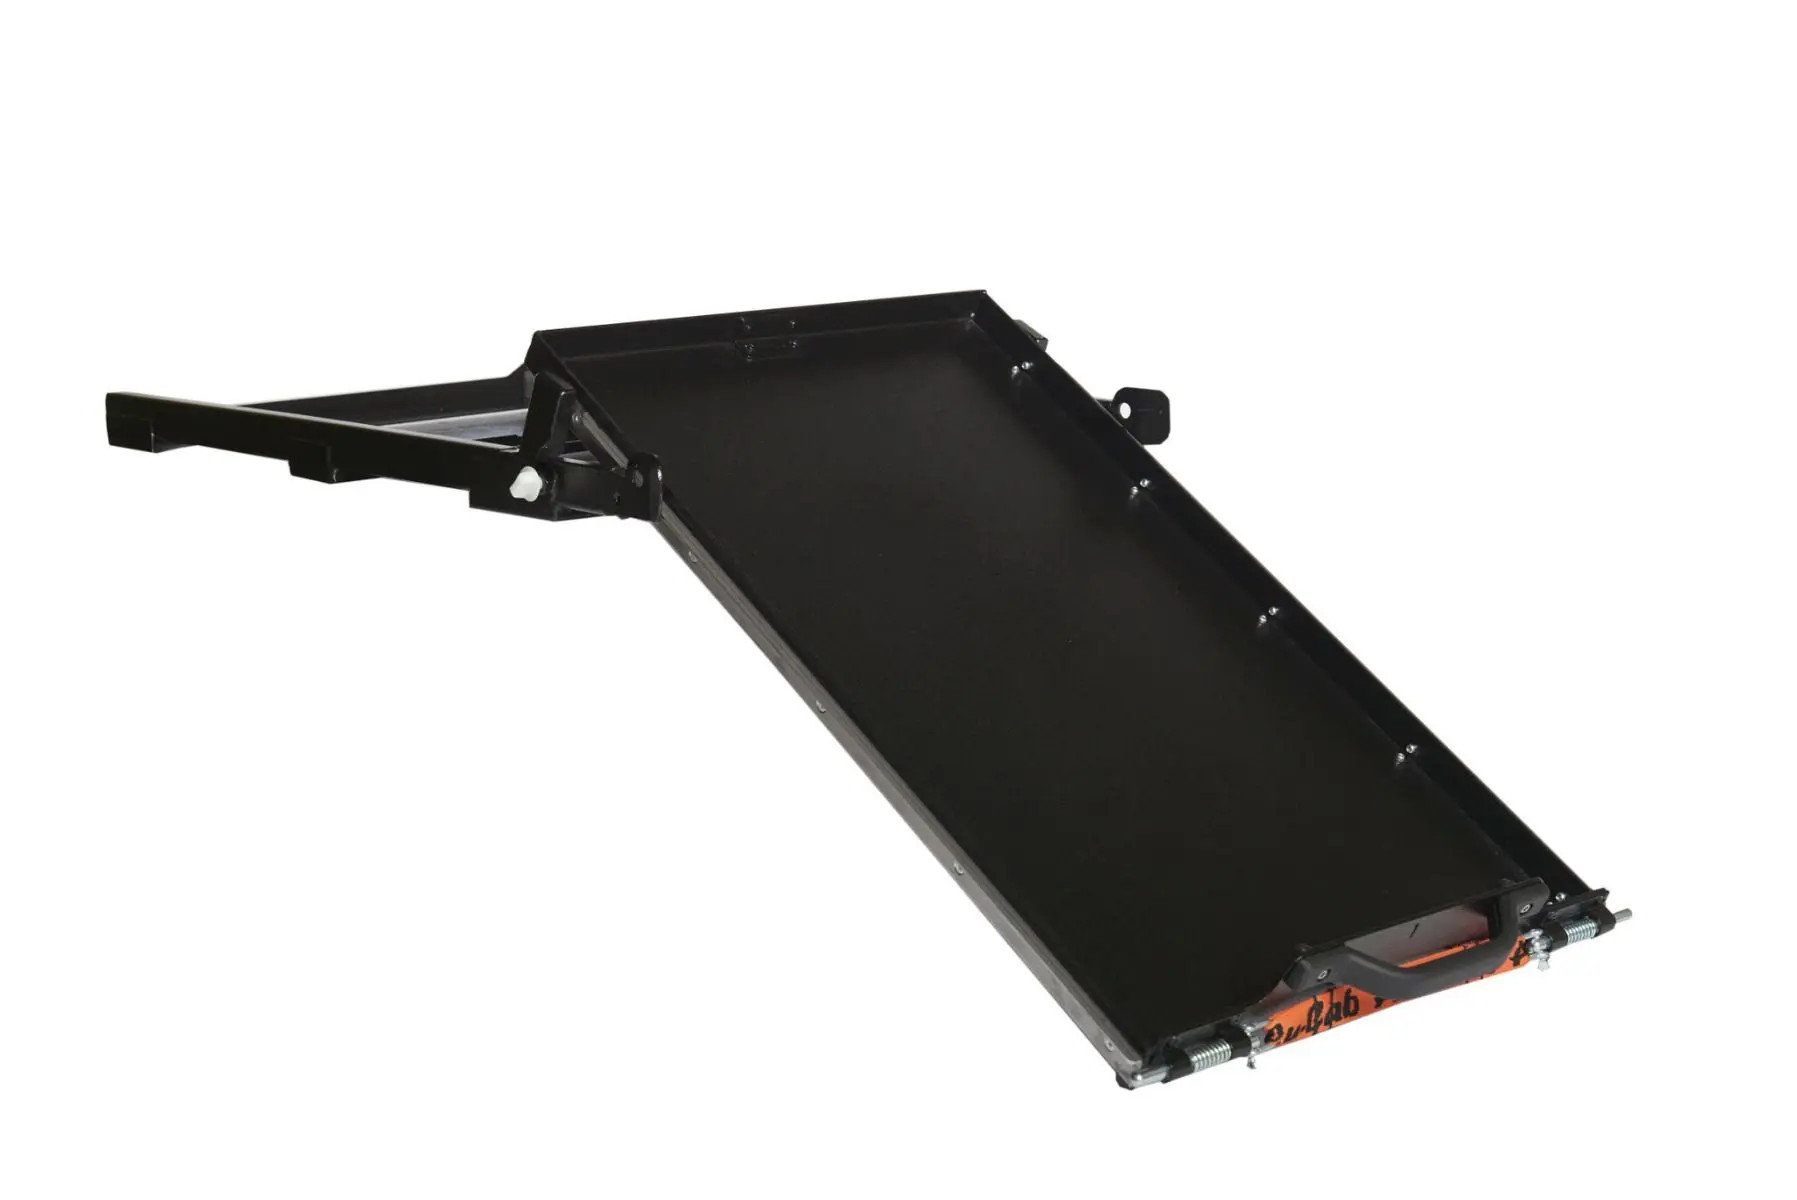 Kickass Premium Heavy Duty Fridge Slide - Built in Slide-Out Table